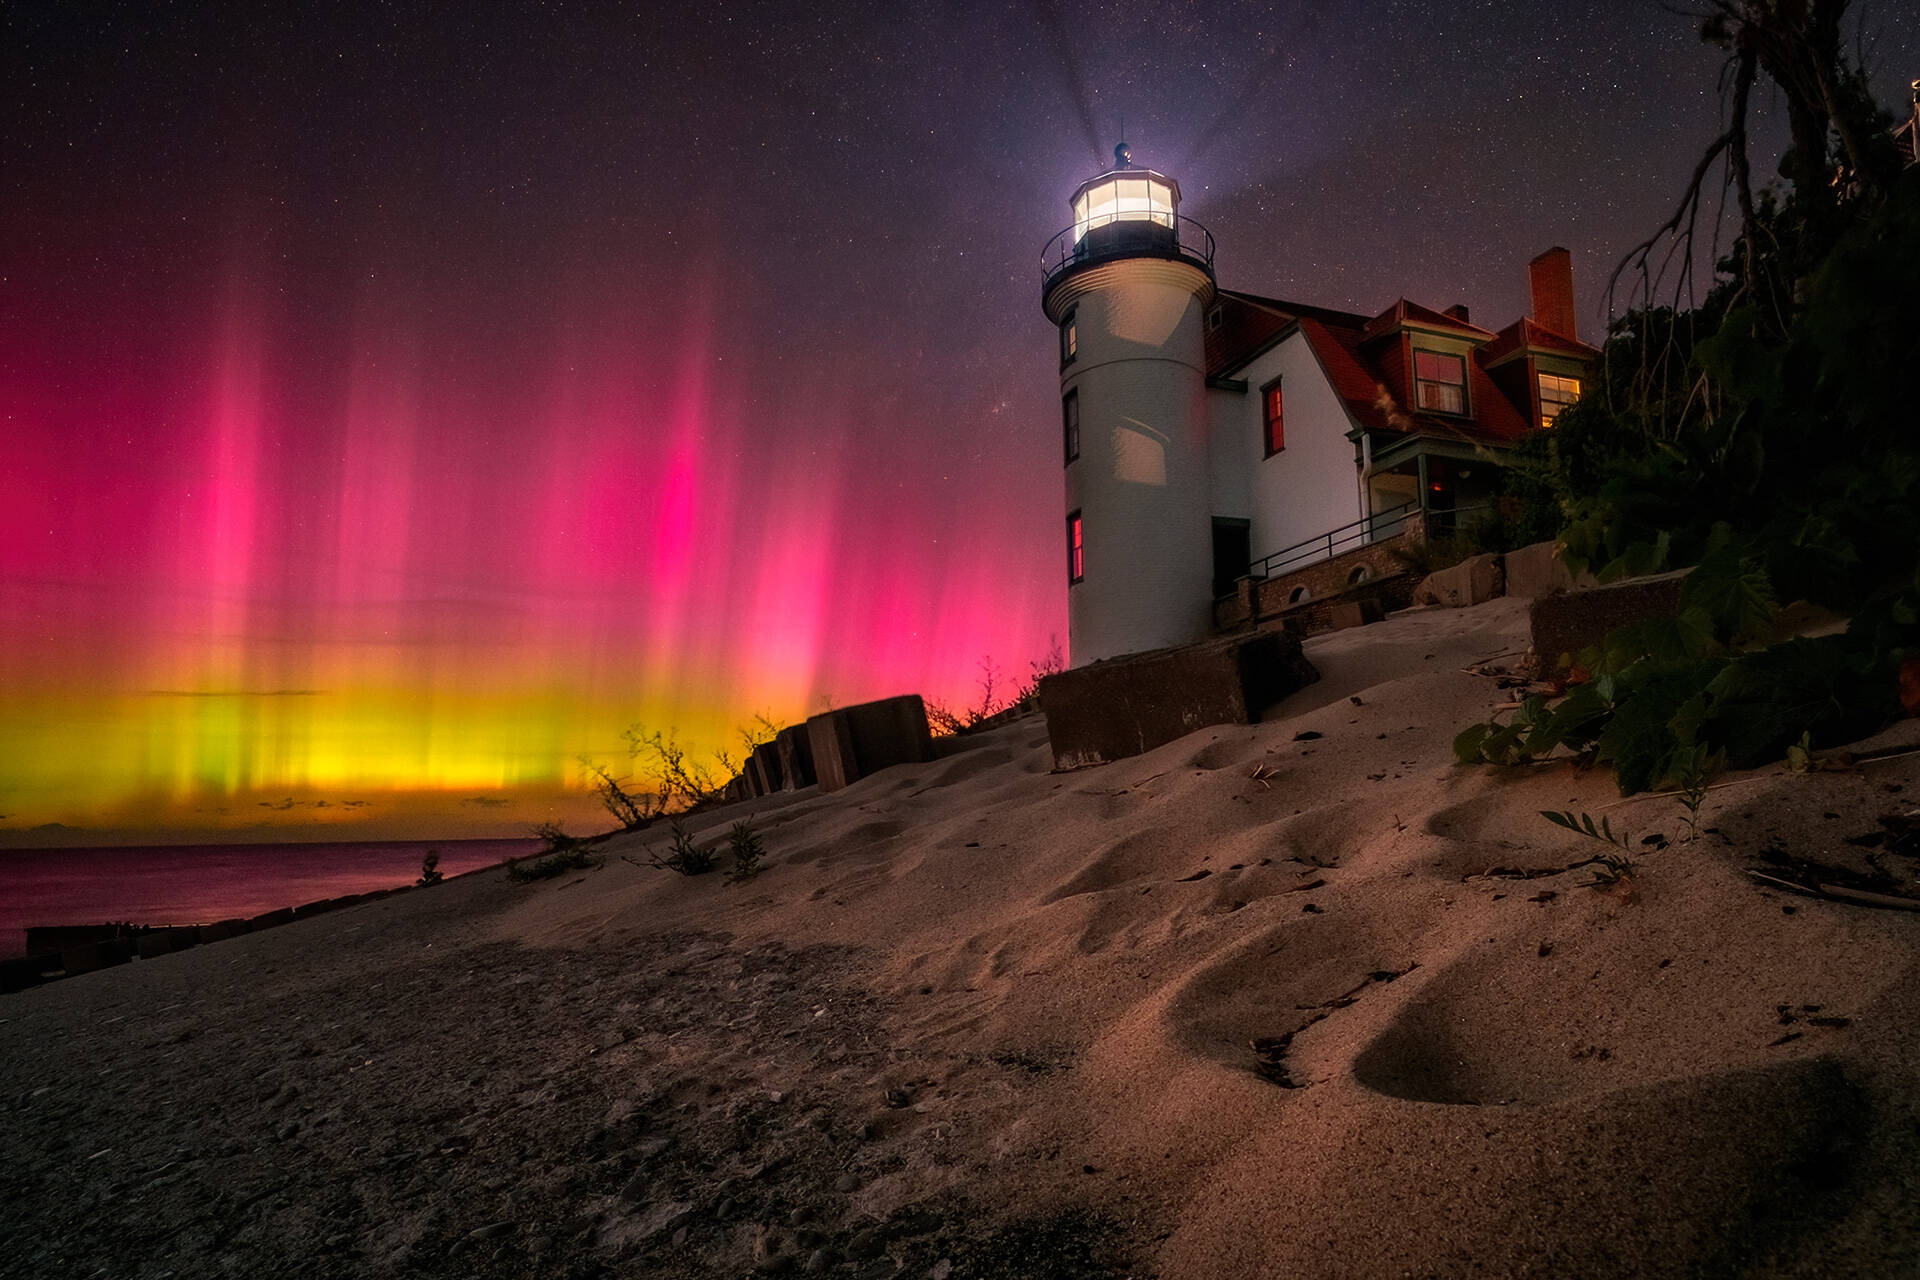 Aurora Boreal de color rojo intenso y brillante cubre el cielo nocturno tras un faro en una playa